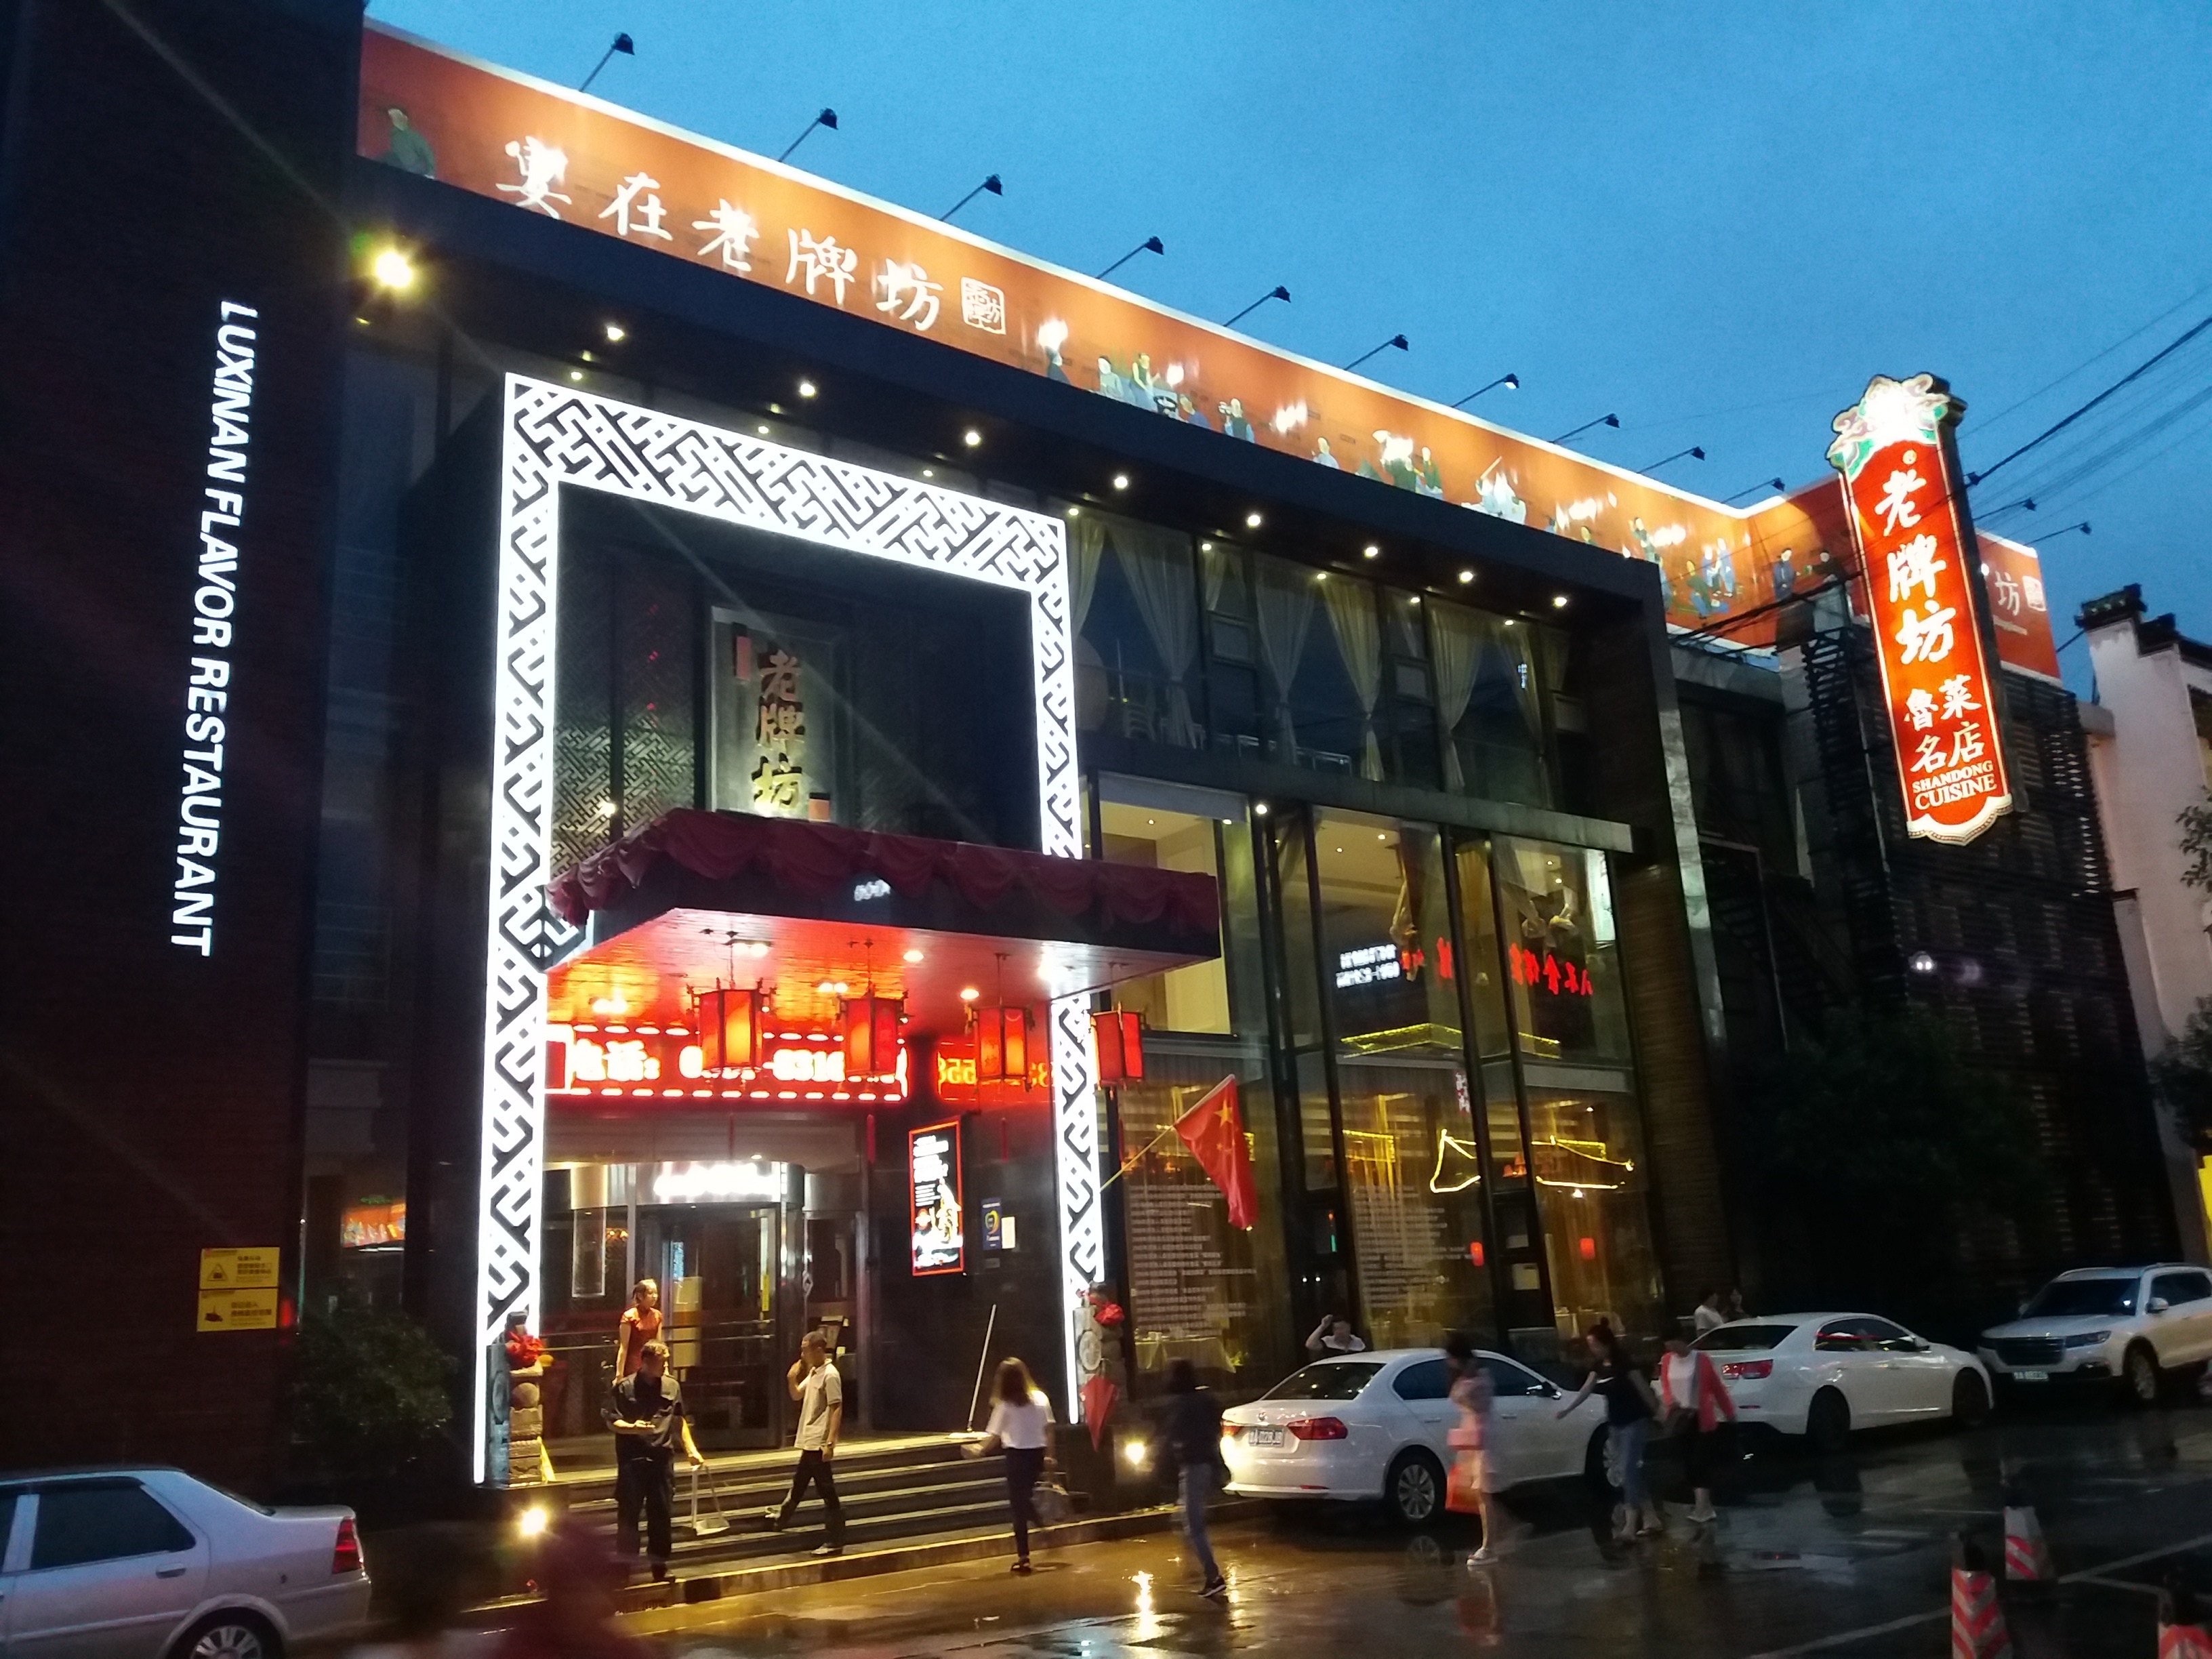 2022老牌坊鲁菜名店(边庄店)美食餐厅,1,抵达济南的当天在出租车上.